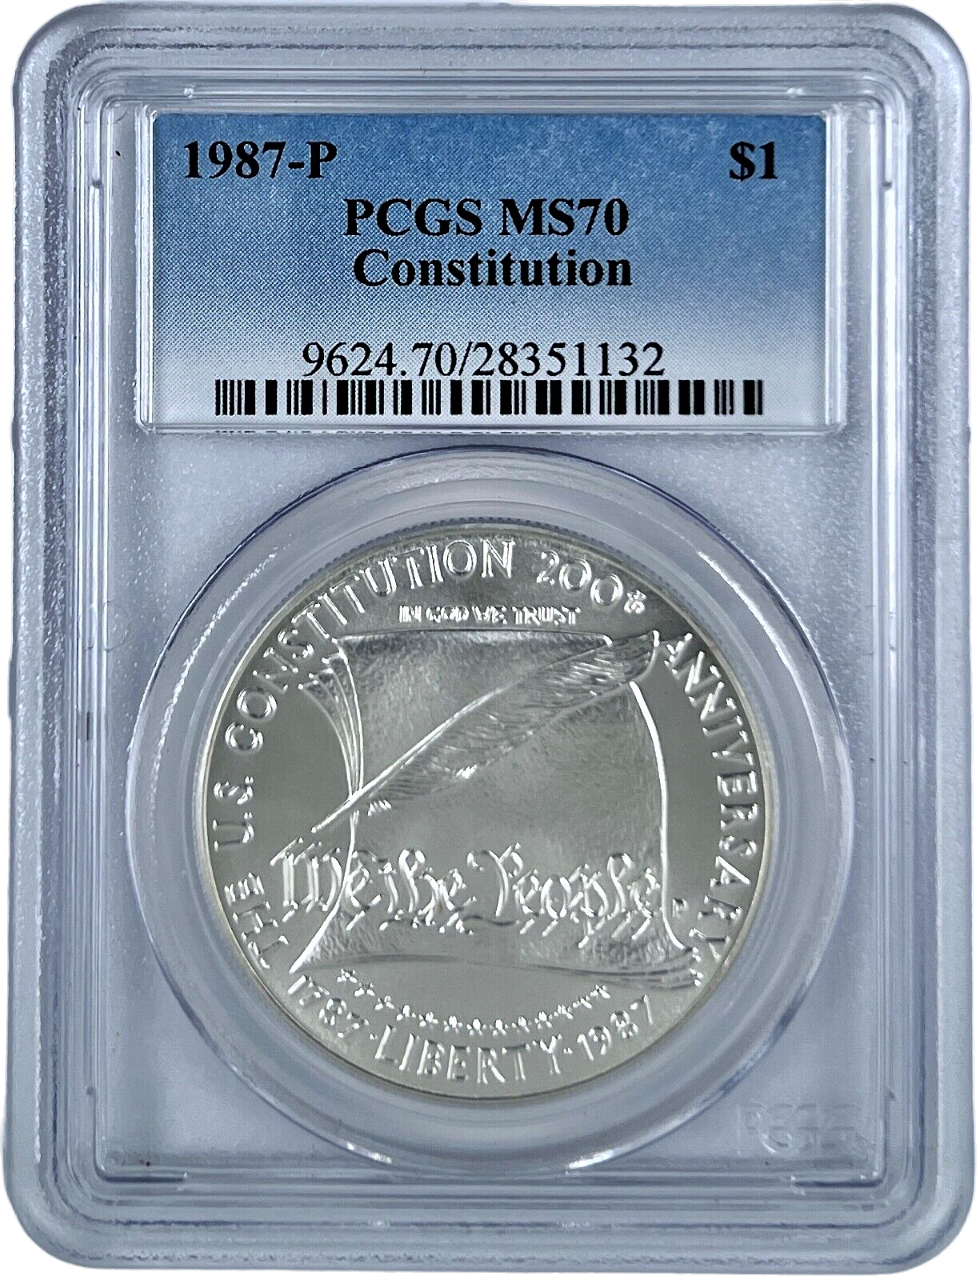 1987 P Silver Eagle - Commemorative/Constitution - PCGS MS70